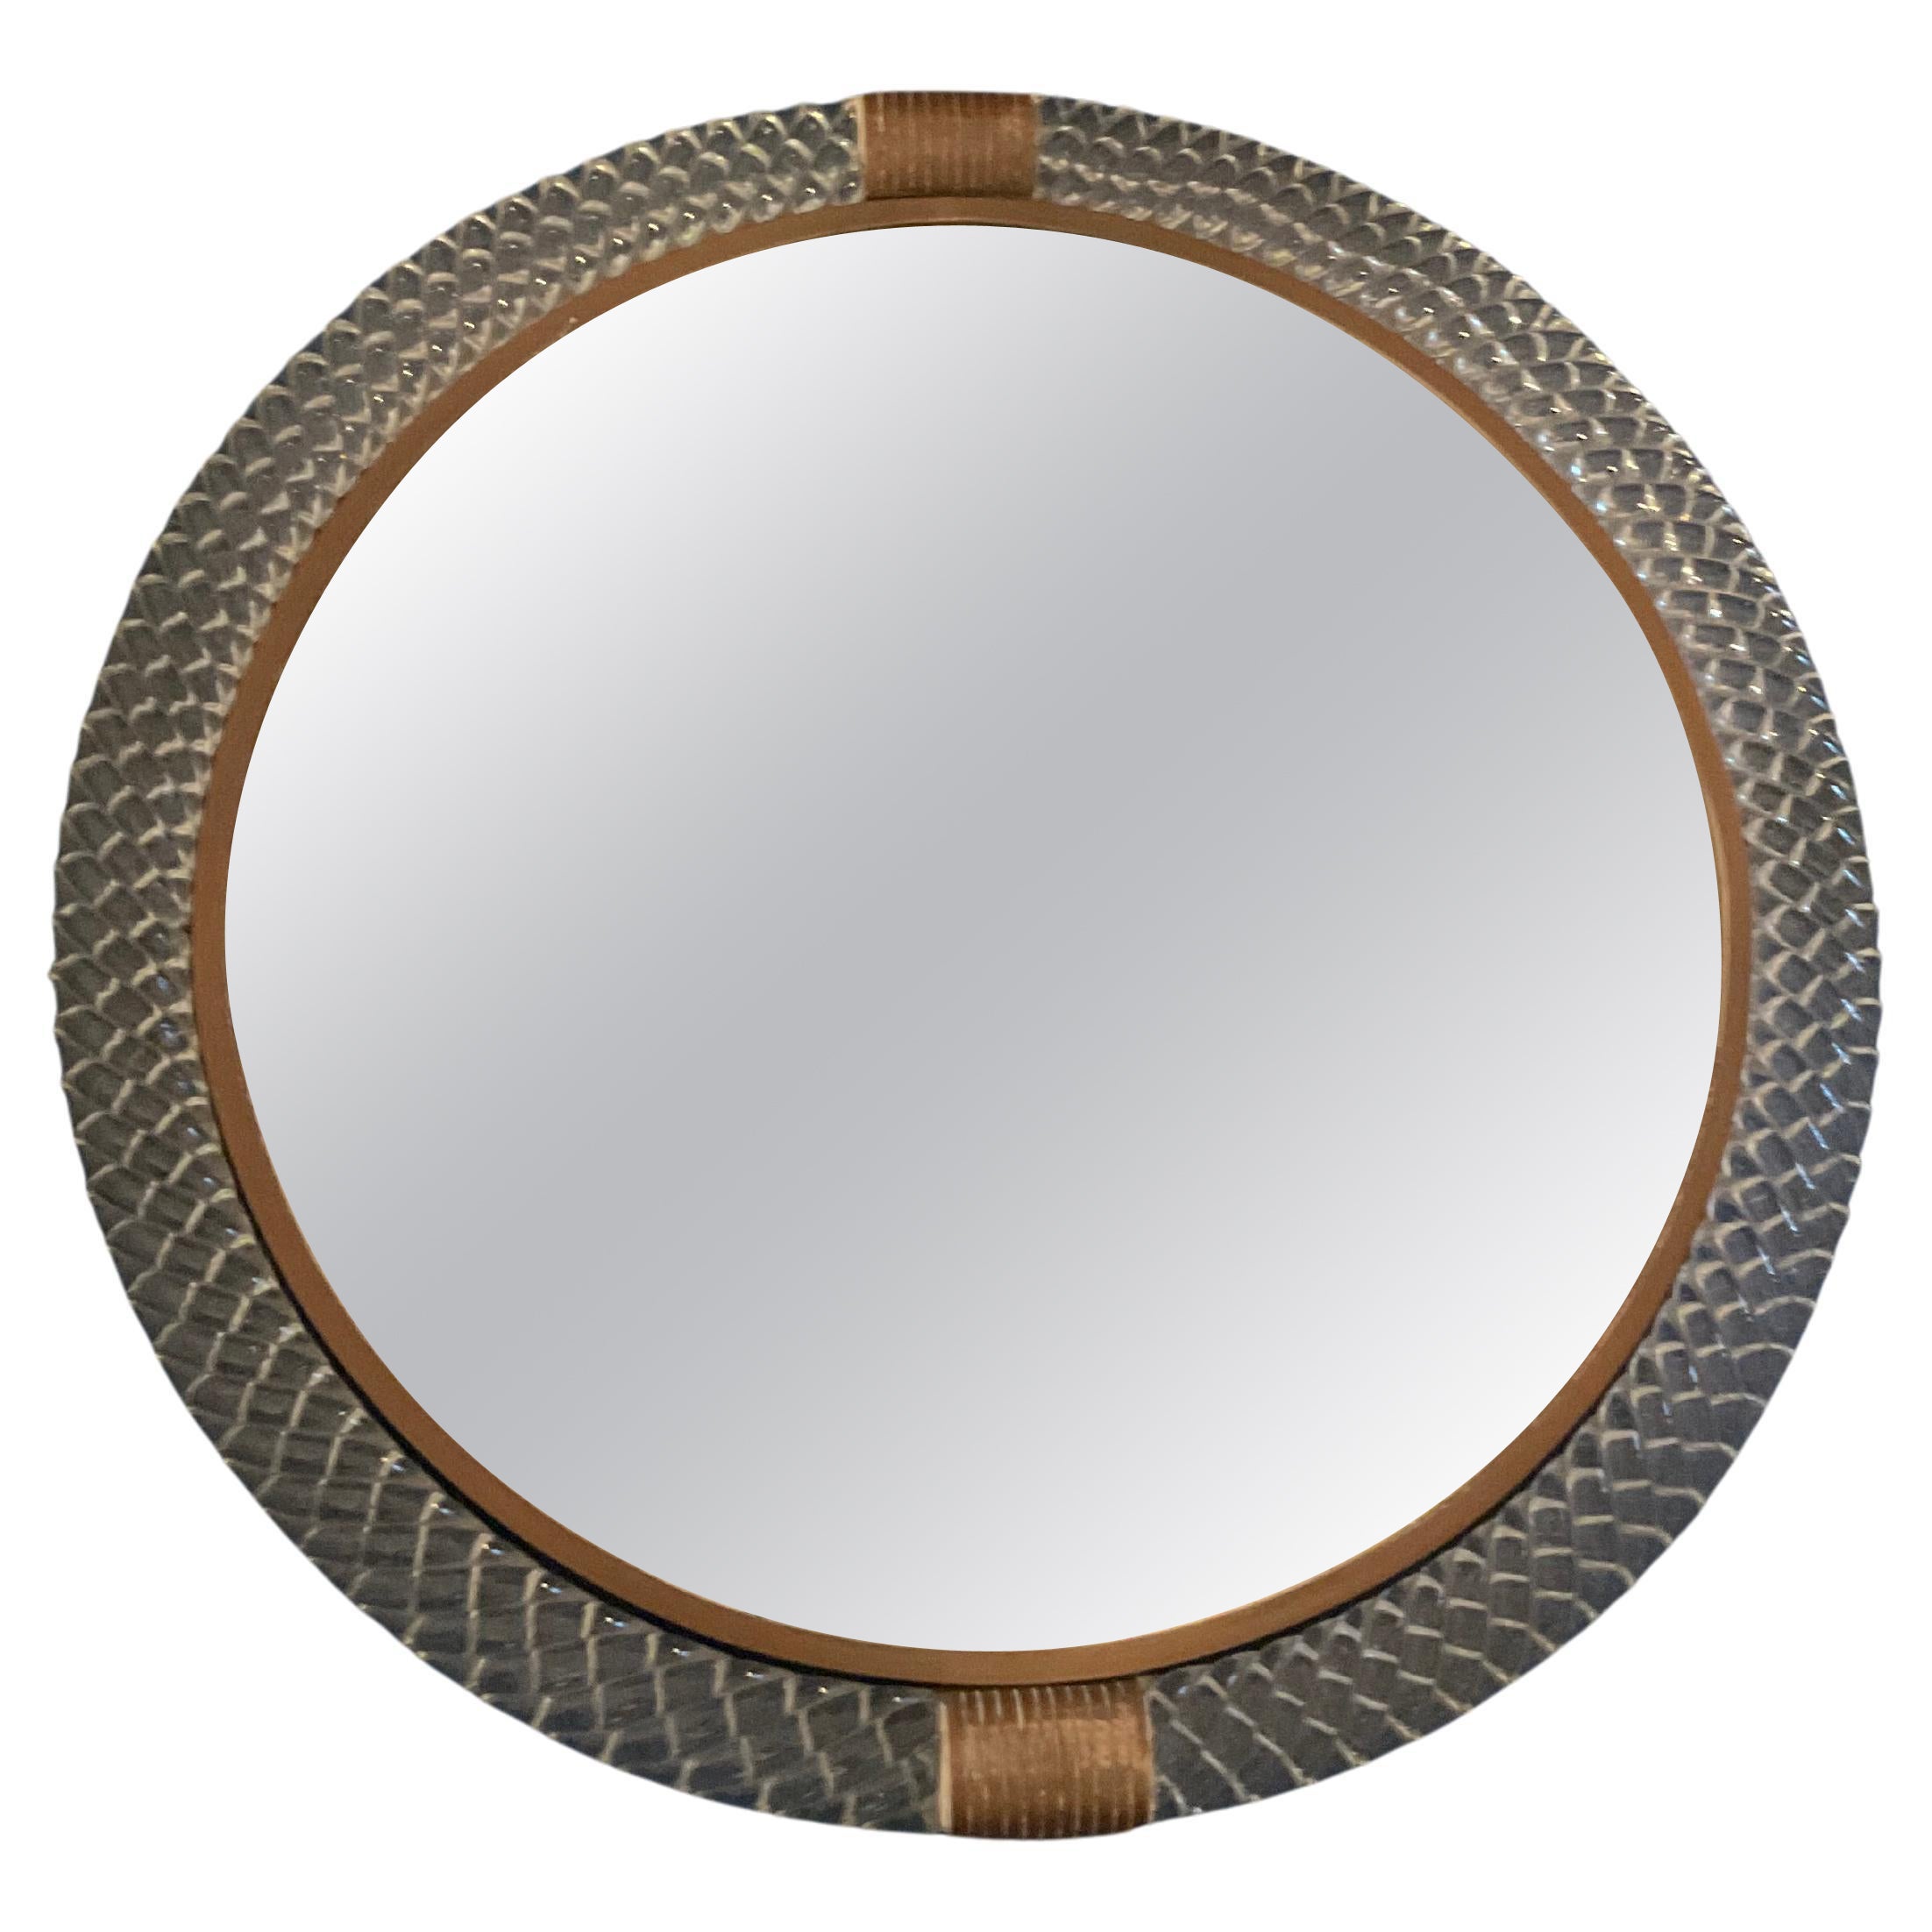 VENINI - Round tourchon mirror - Model 69 - MURANO 1939 For Sale